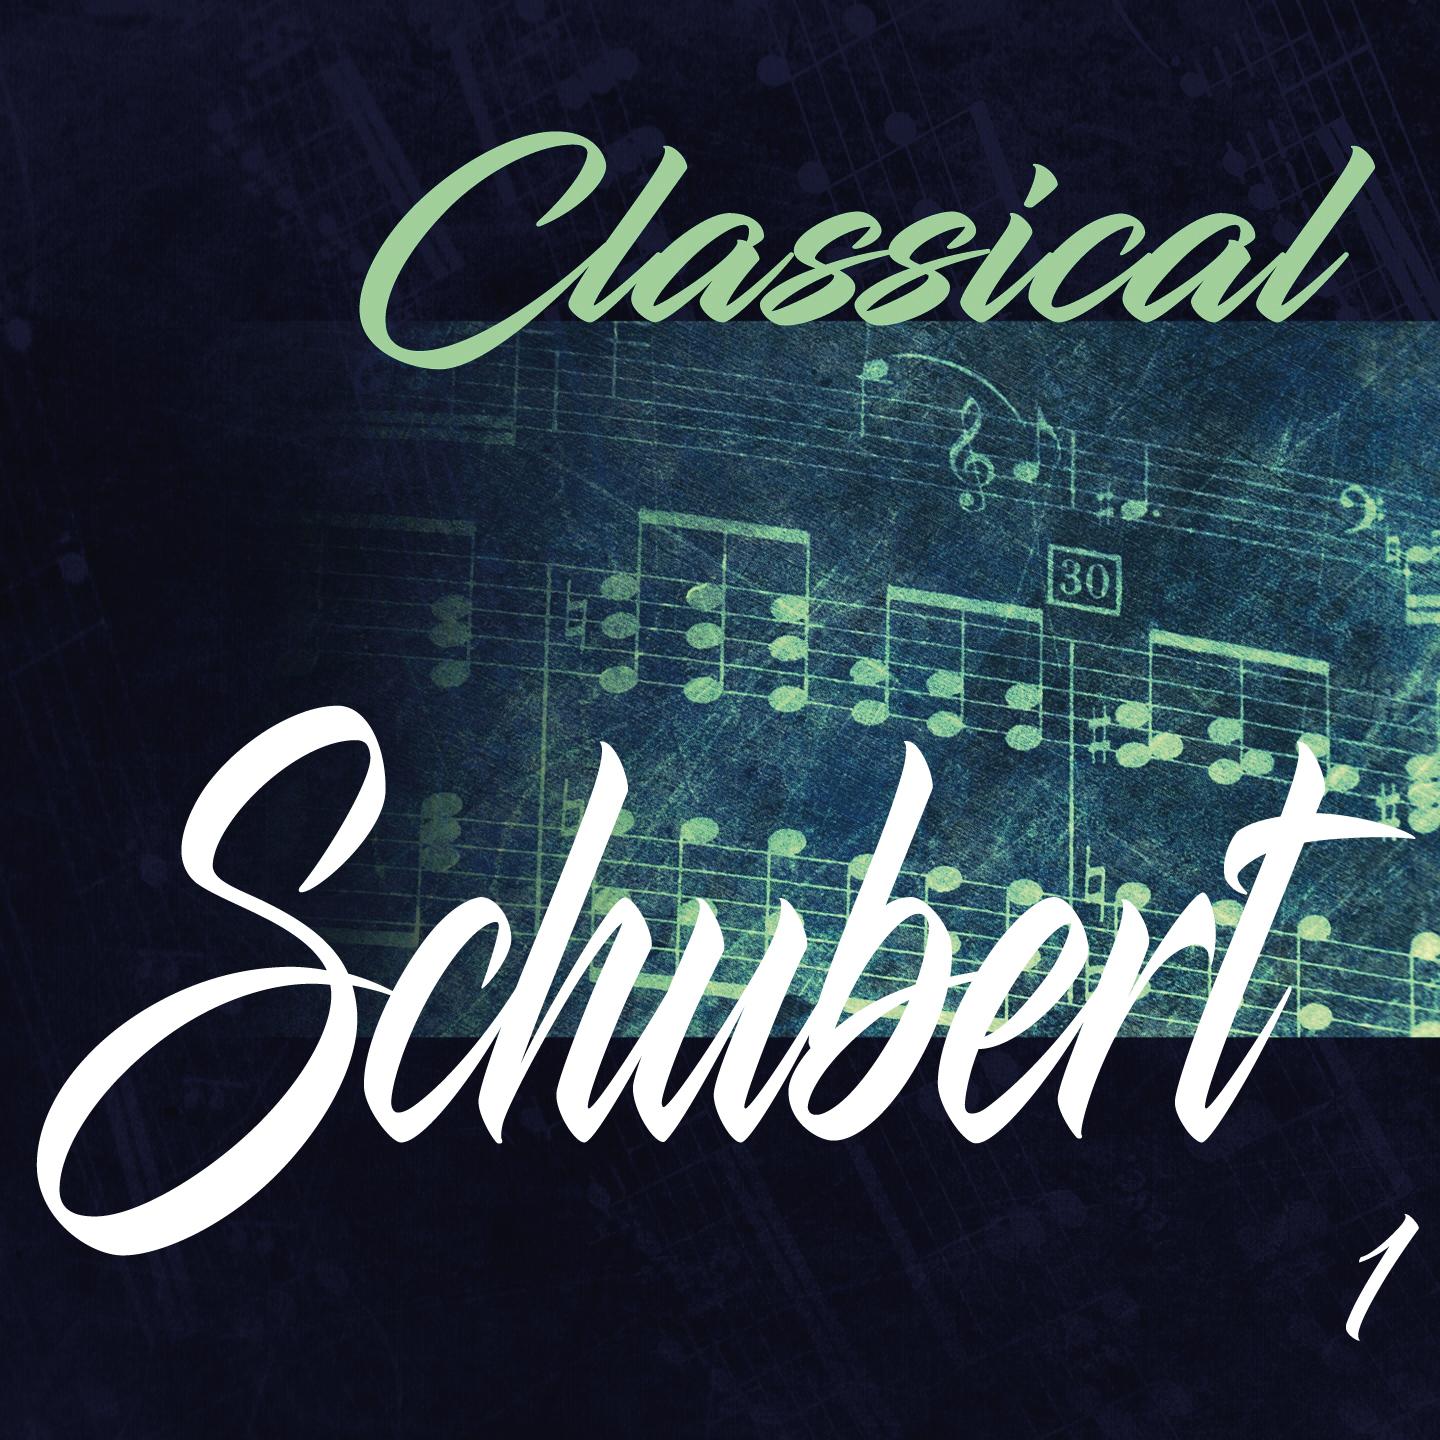 Classical Schubert 1